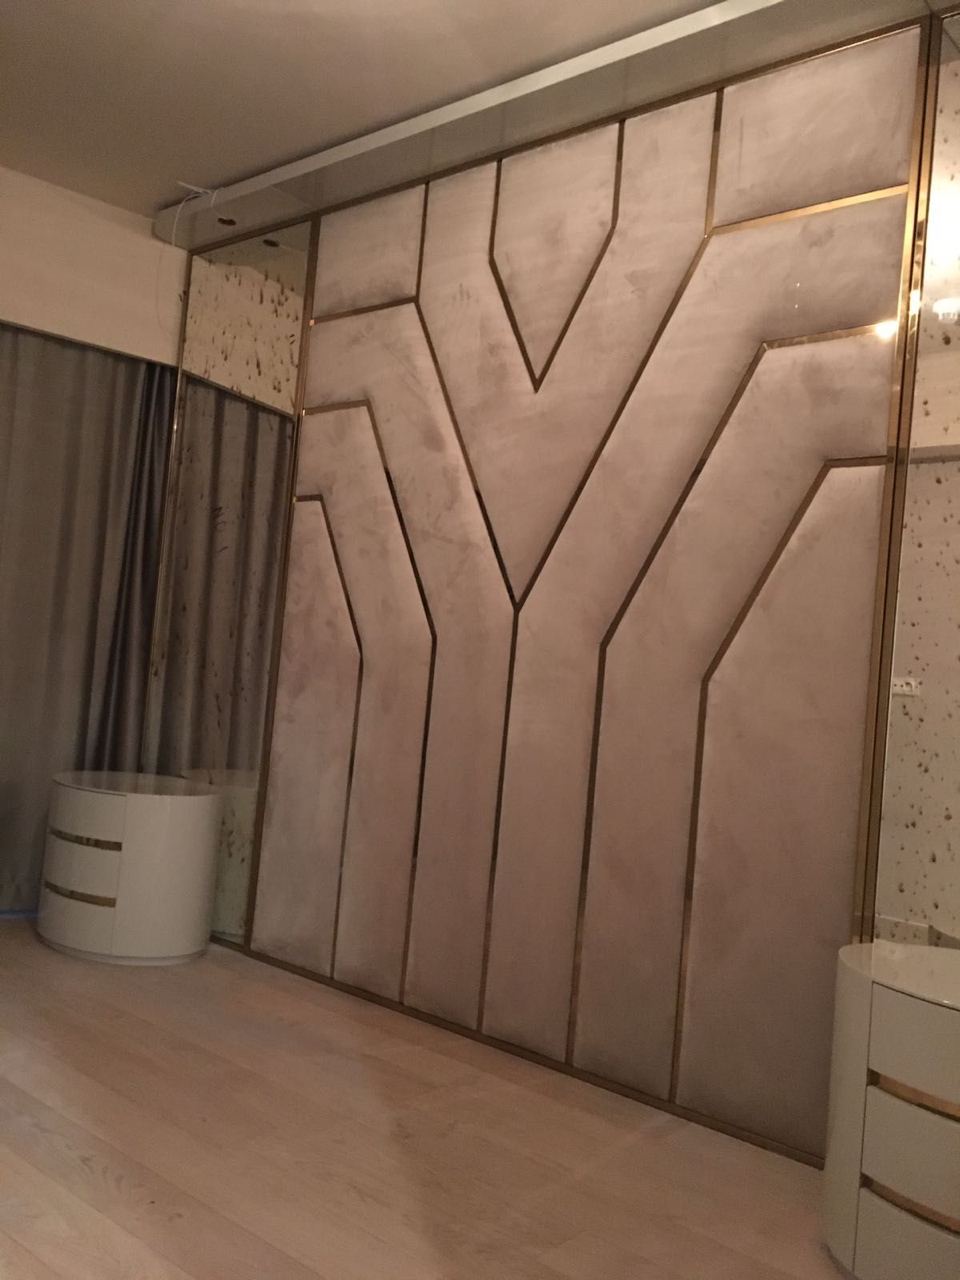 Мягкая панель в гостиную на всю стену - слева и справа можно поставить шкафы для одежды.